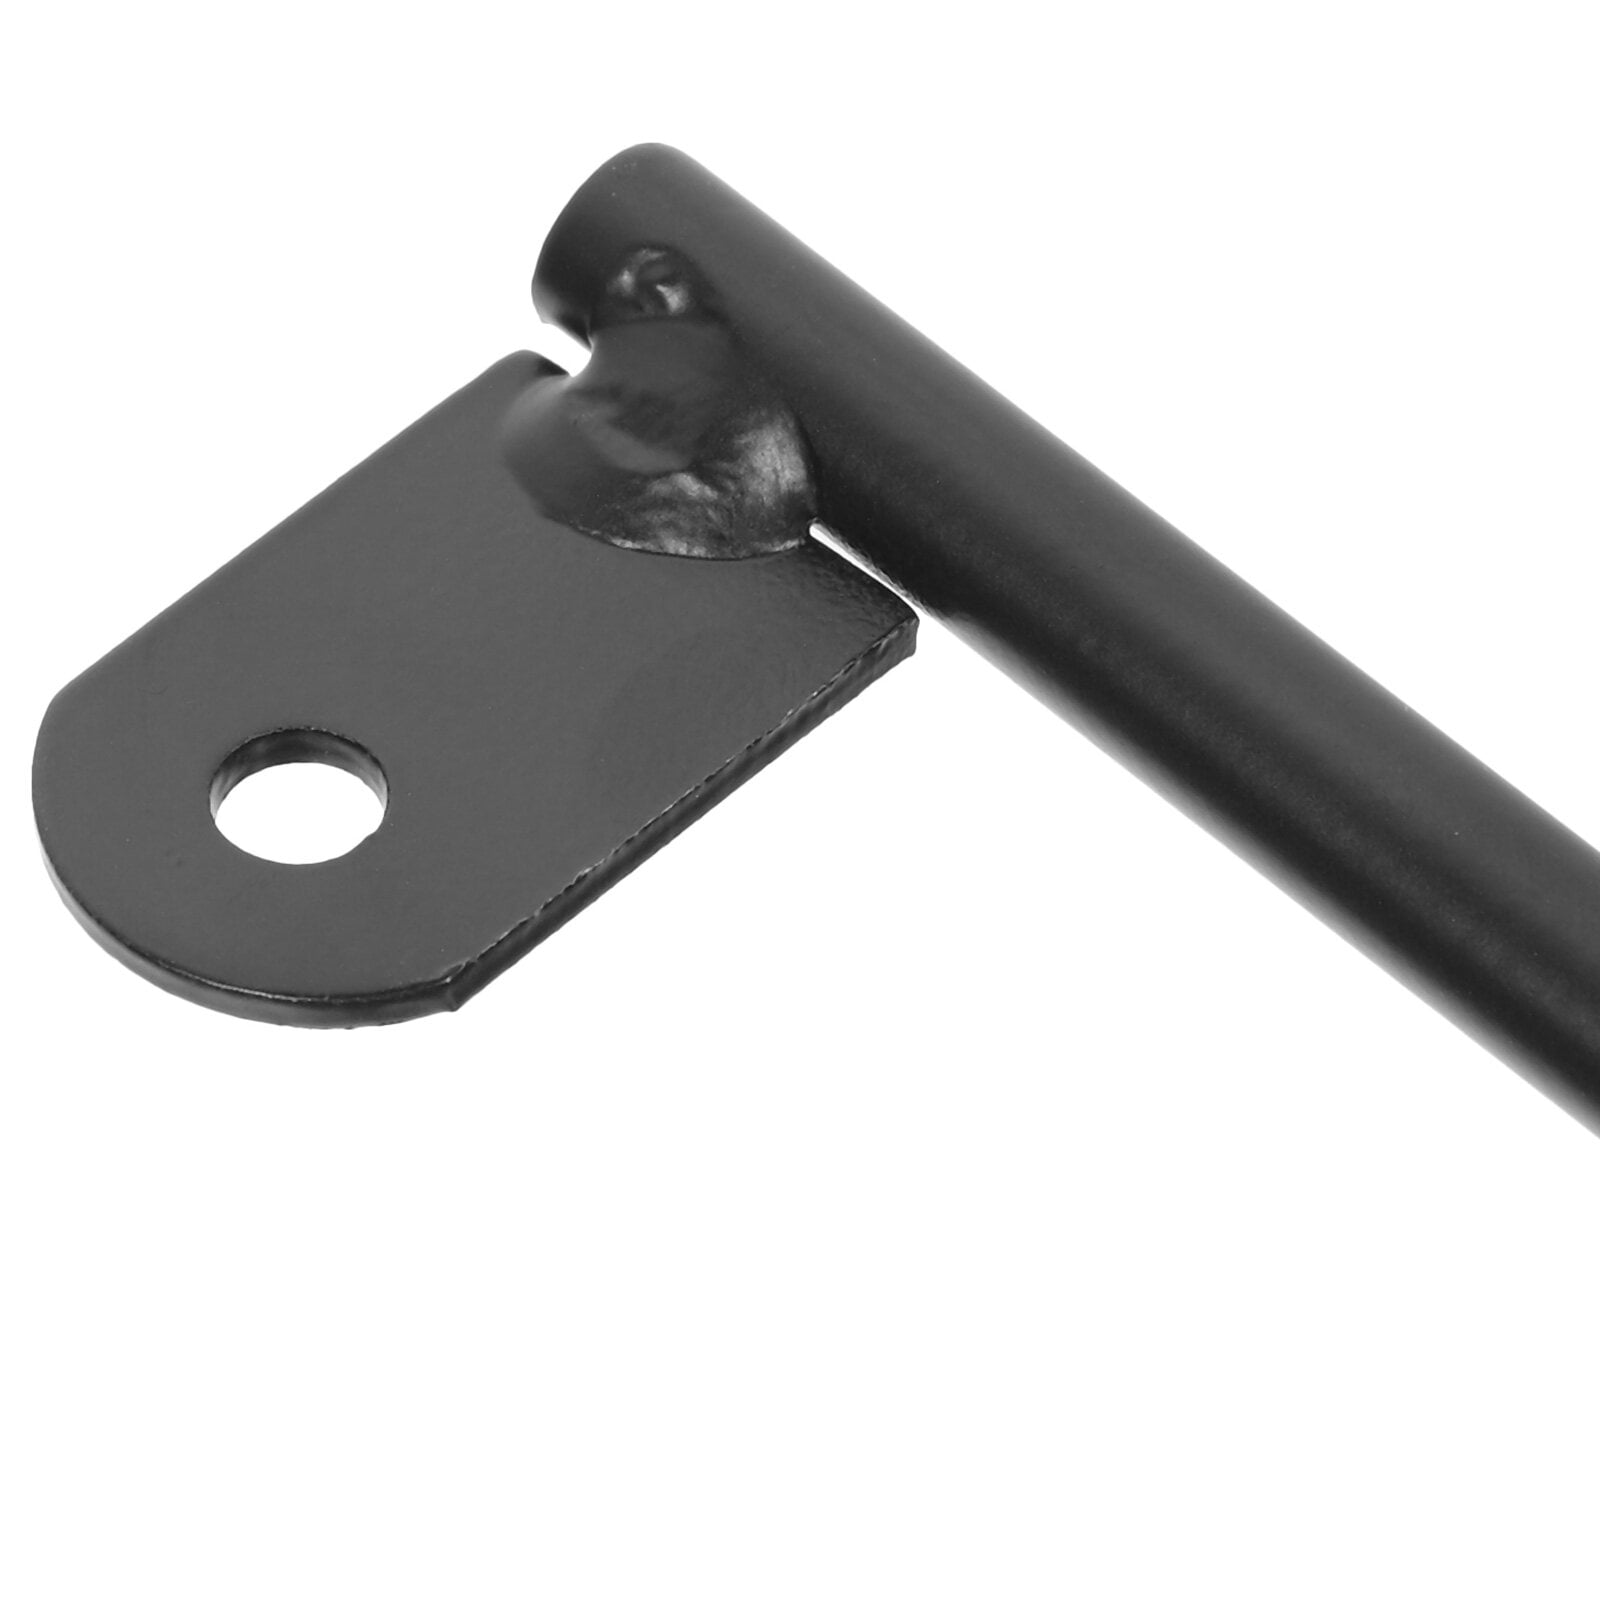 ECOHomes Mattress Retainer Bar - Mattress Slide Stopper Keep Mattress from Sliding | Non Slip Mattress Holder for Bed Frame Prevents Slipping